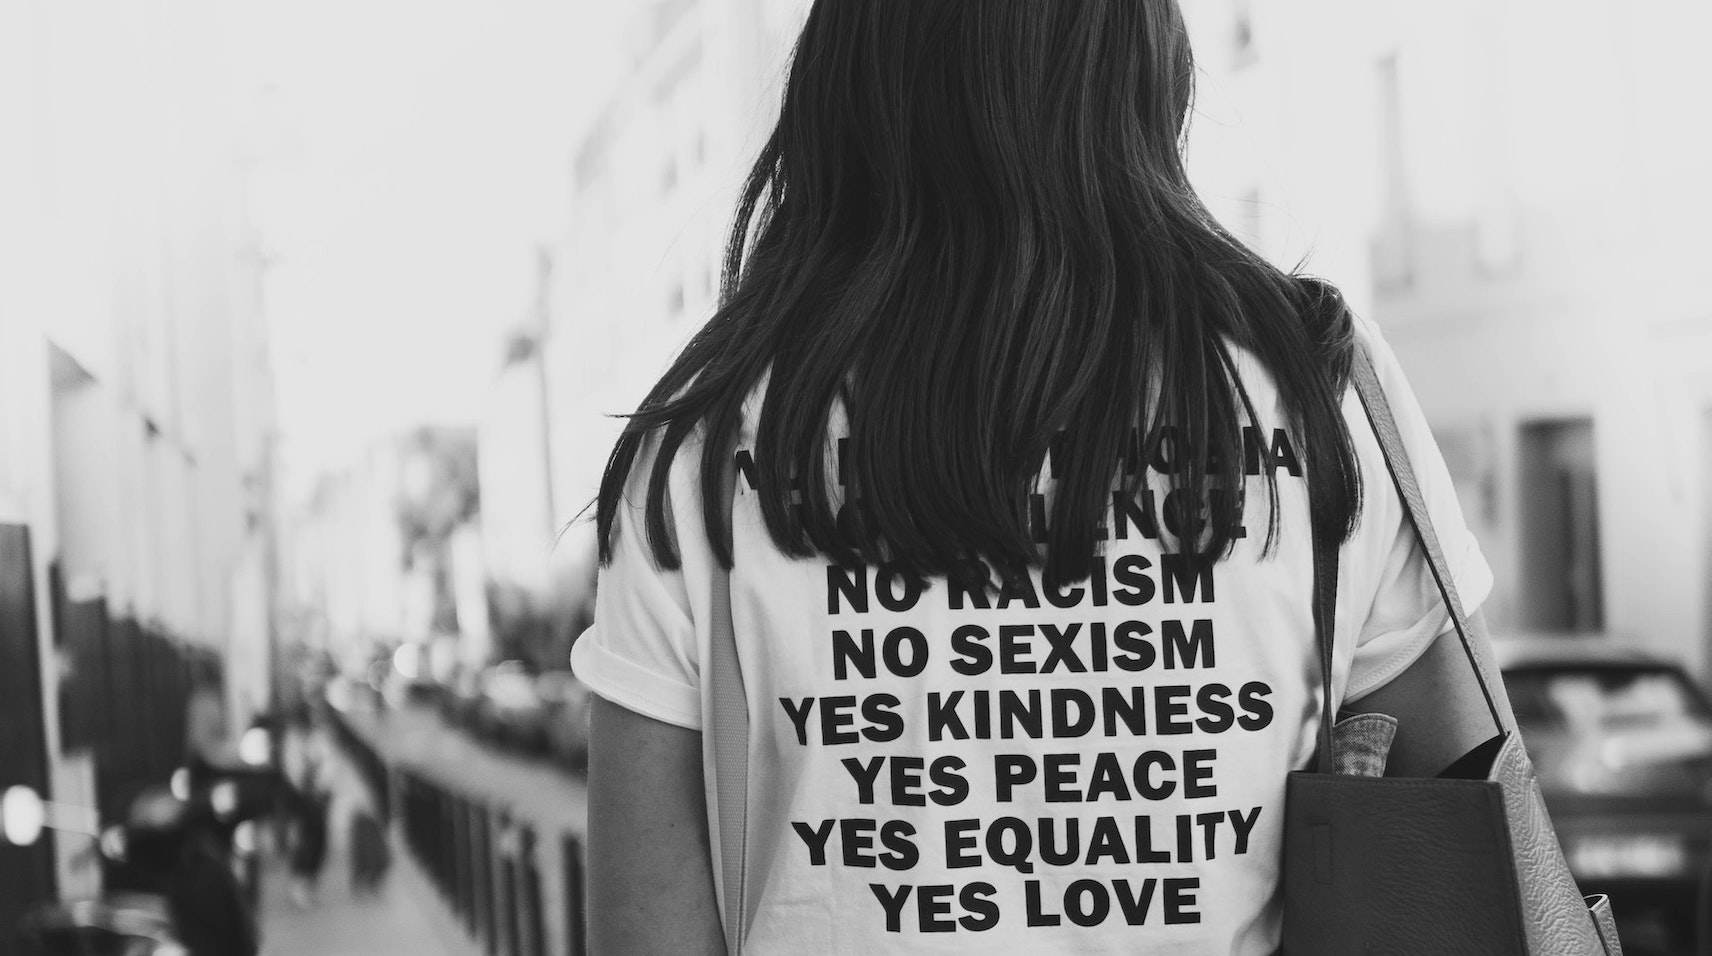 Bild von einer jungen Frau, deren Rücken nur zu erkennen ist. Auf ihrem T-Shirt sind die Worte "No racism", "No "sexism", "Yes Kindness", "Yes Peace", "Yes Equality", "Yes Love" zu lesen.